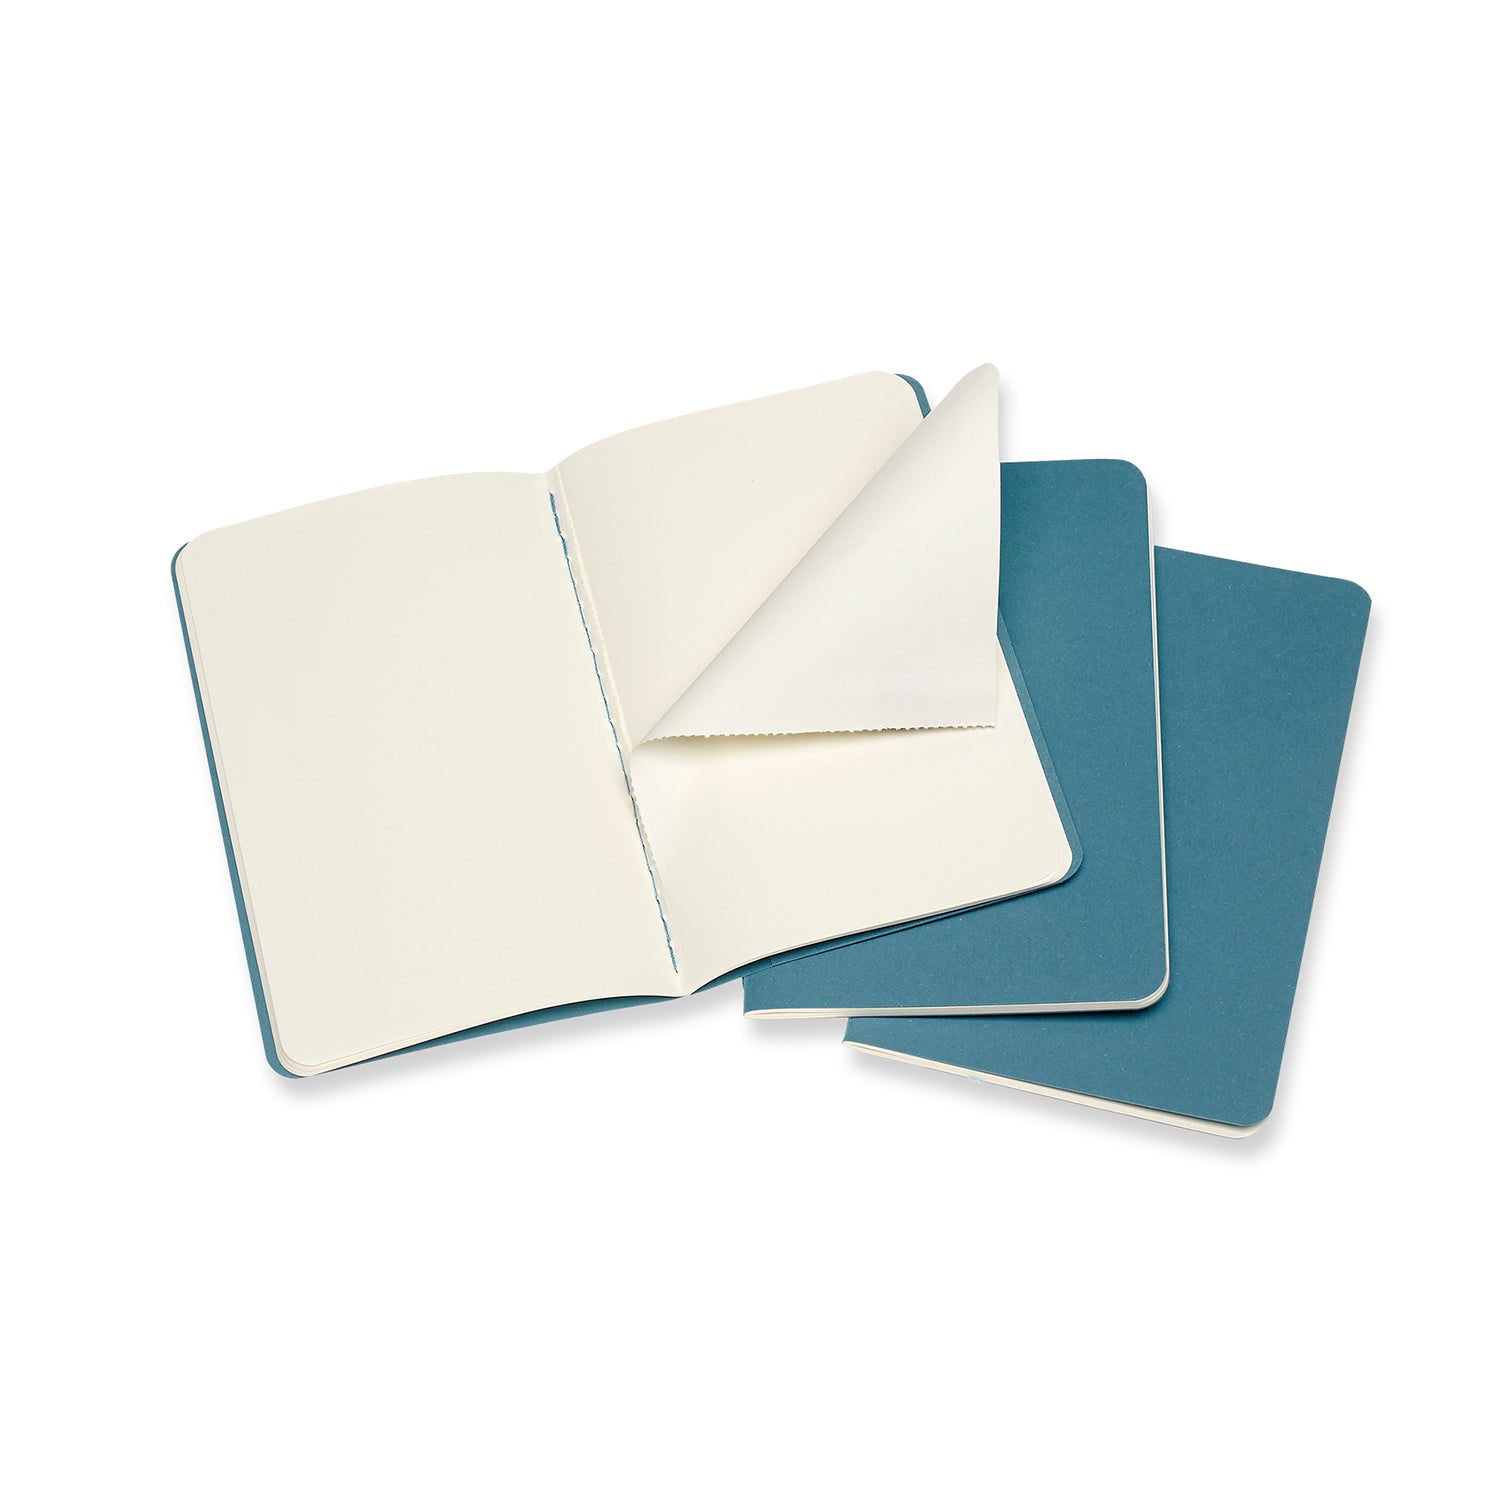 Steel Blue Pocket Cahier Notebook - Set of 3 Black / Ruled / Pocket,Black / Plain / Pocket,Black / Dotted / Pocket,Black / Squared / Pocket,Brisk Blue / Ruled / Pocket,Brisk Blue / Plain / Pocket,Brisk Blue / Dotted / Pocket,Brisk Blue / Squared / Pocket Moleskine